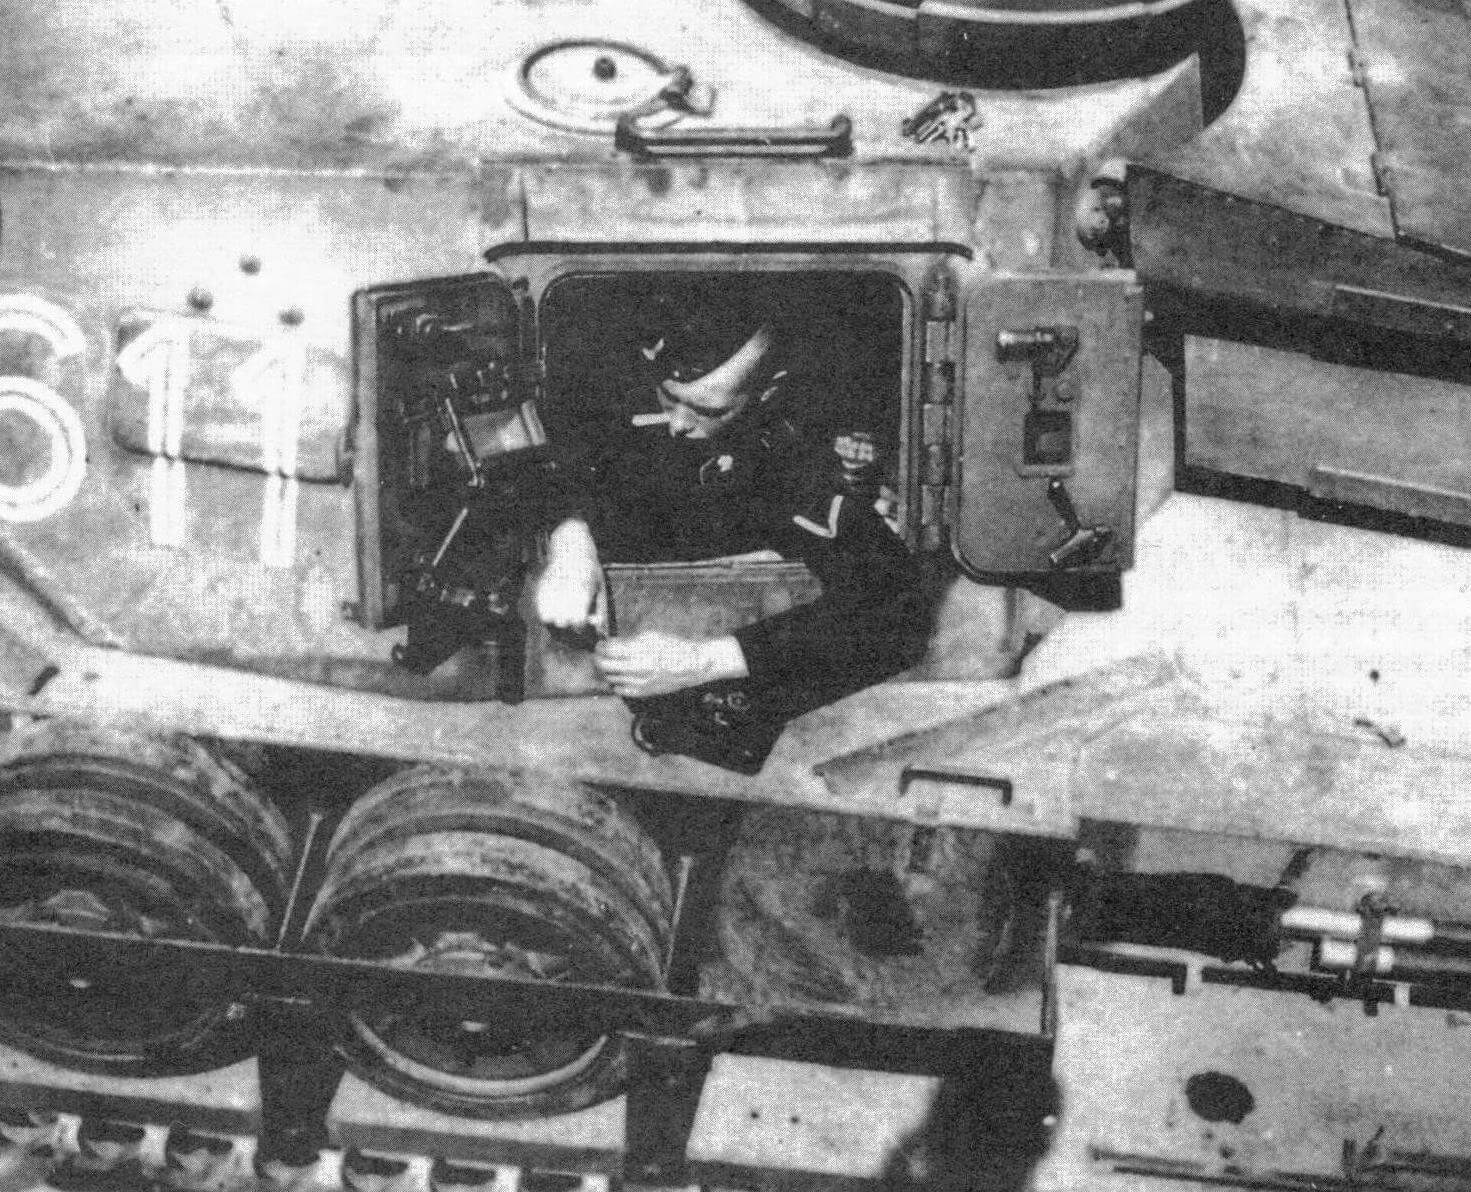 Бортовой башенный люк танка Pz.IV Ausf.F с открытой двухстворчатой крышкой